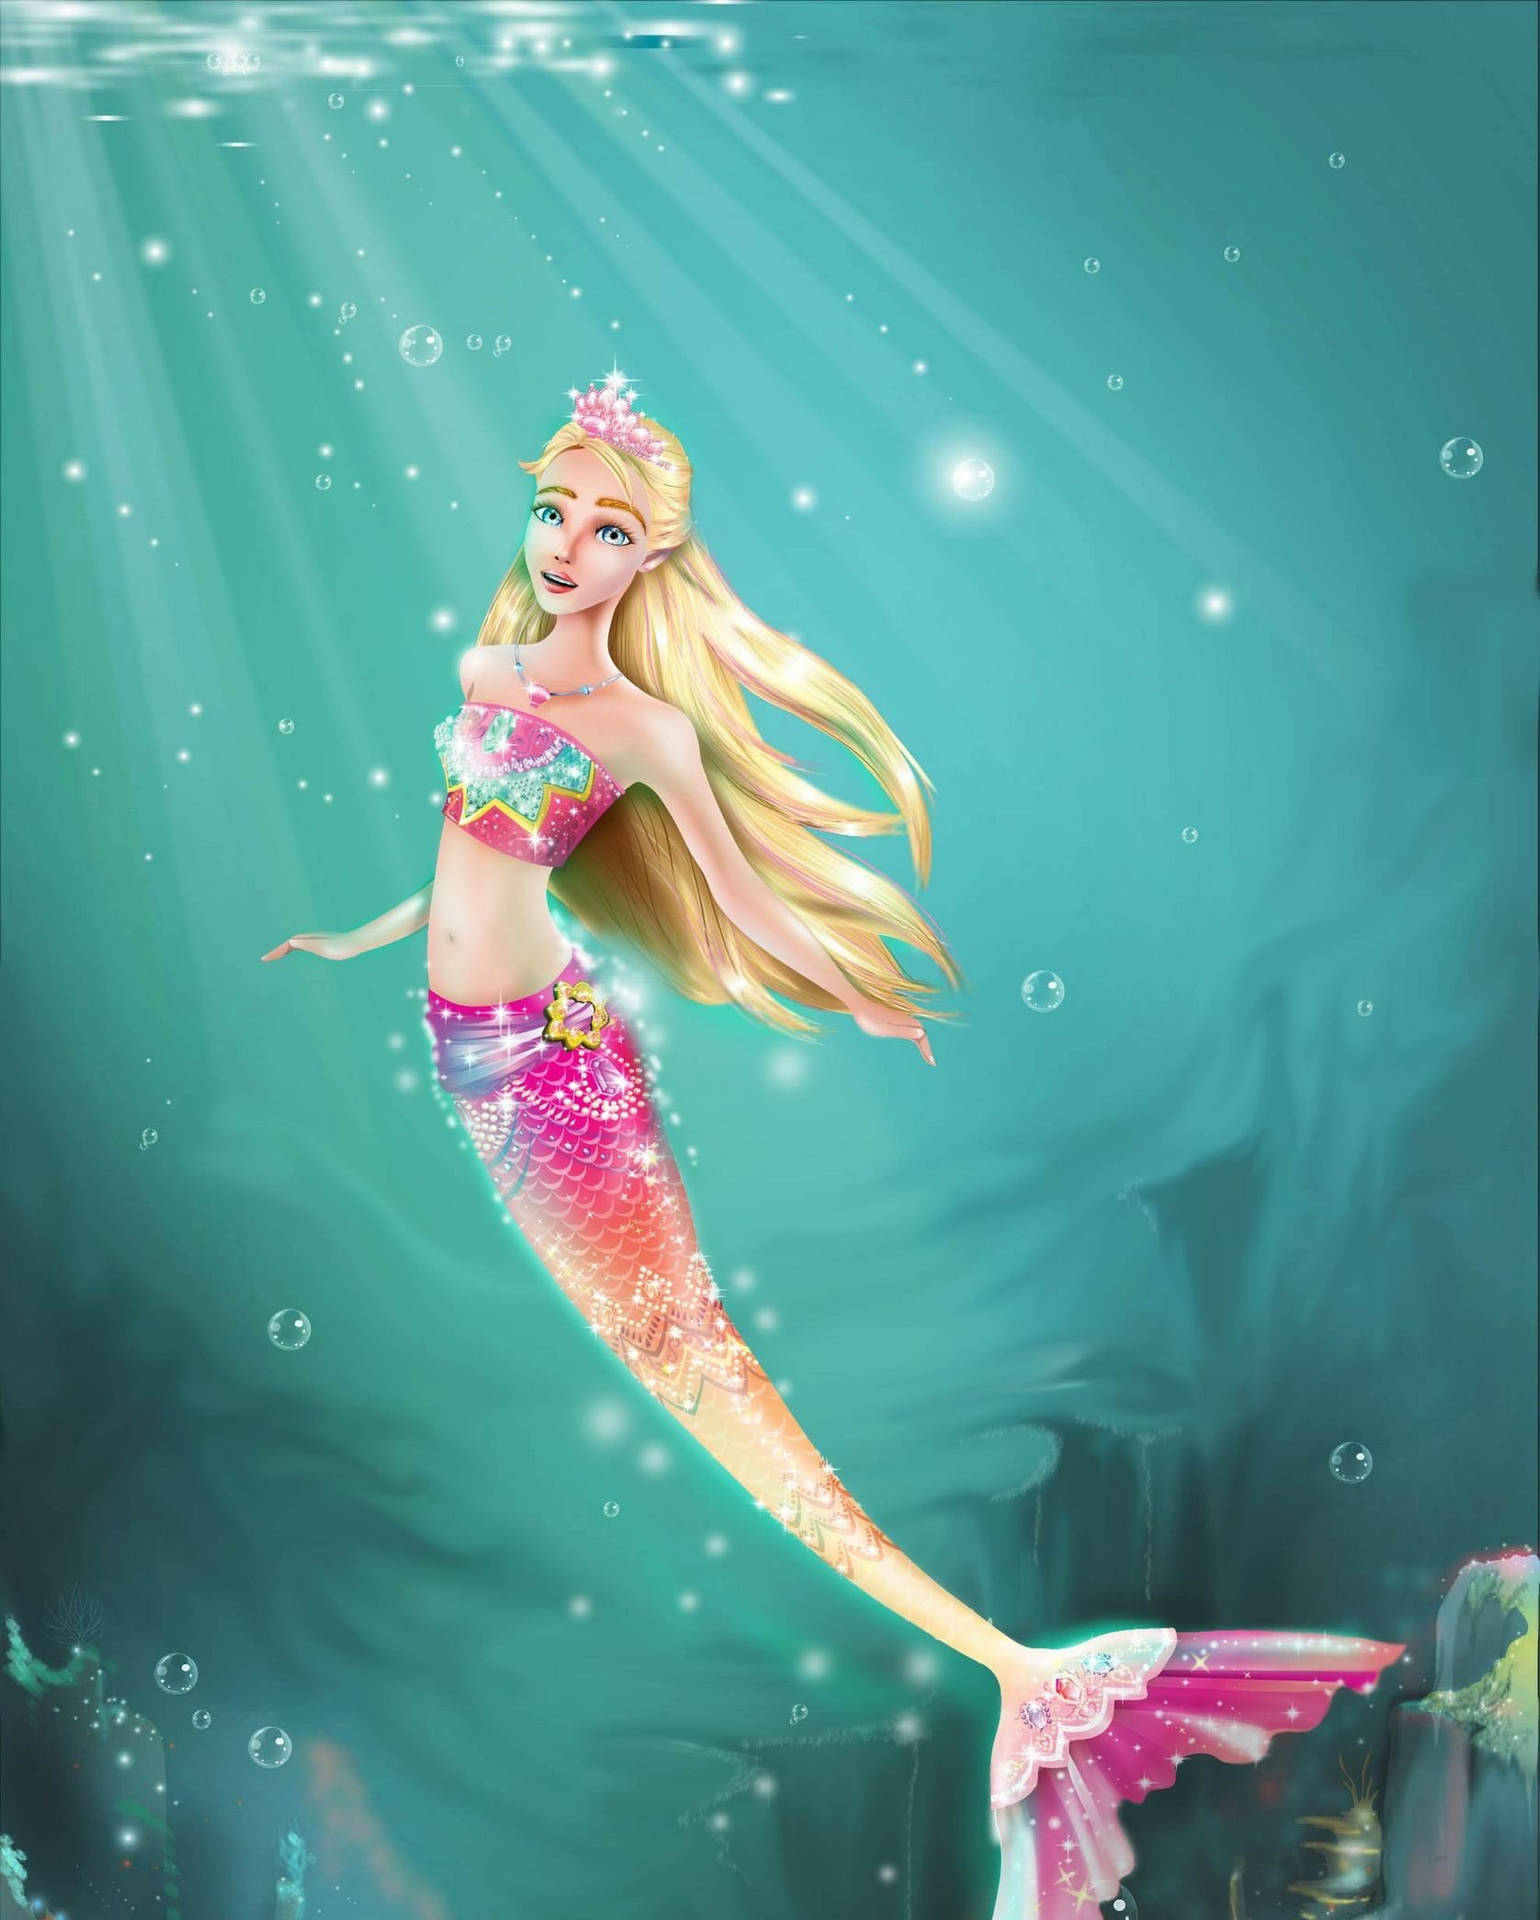 Tapete af Barbie Havfrue Kunstværk: Et dybdeband af farverige Barbiedukker, der er tematiseret som havmennesker. Wallpaper